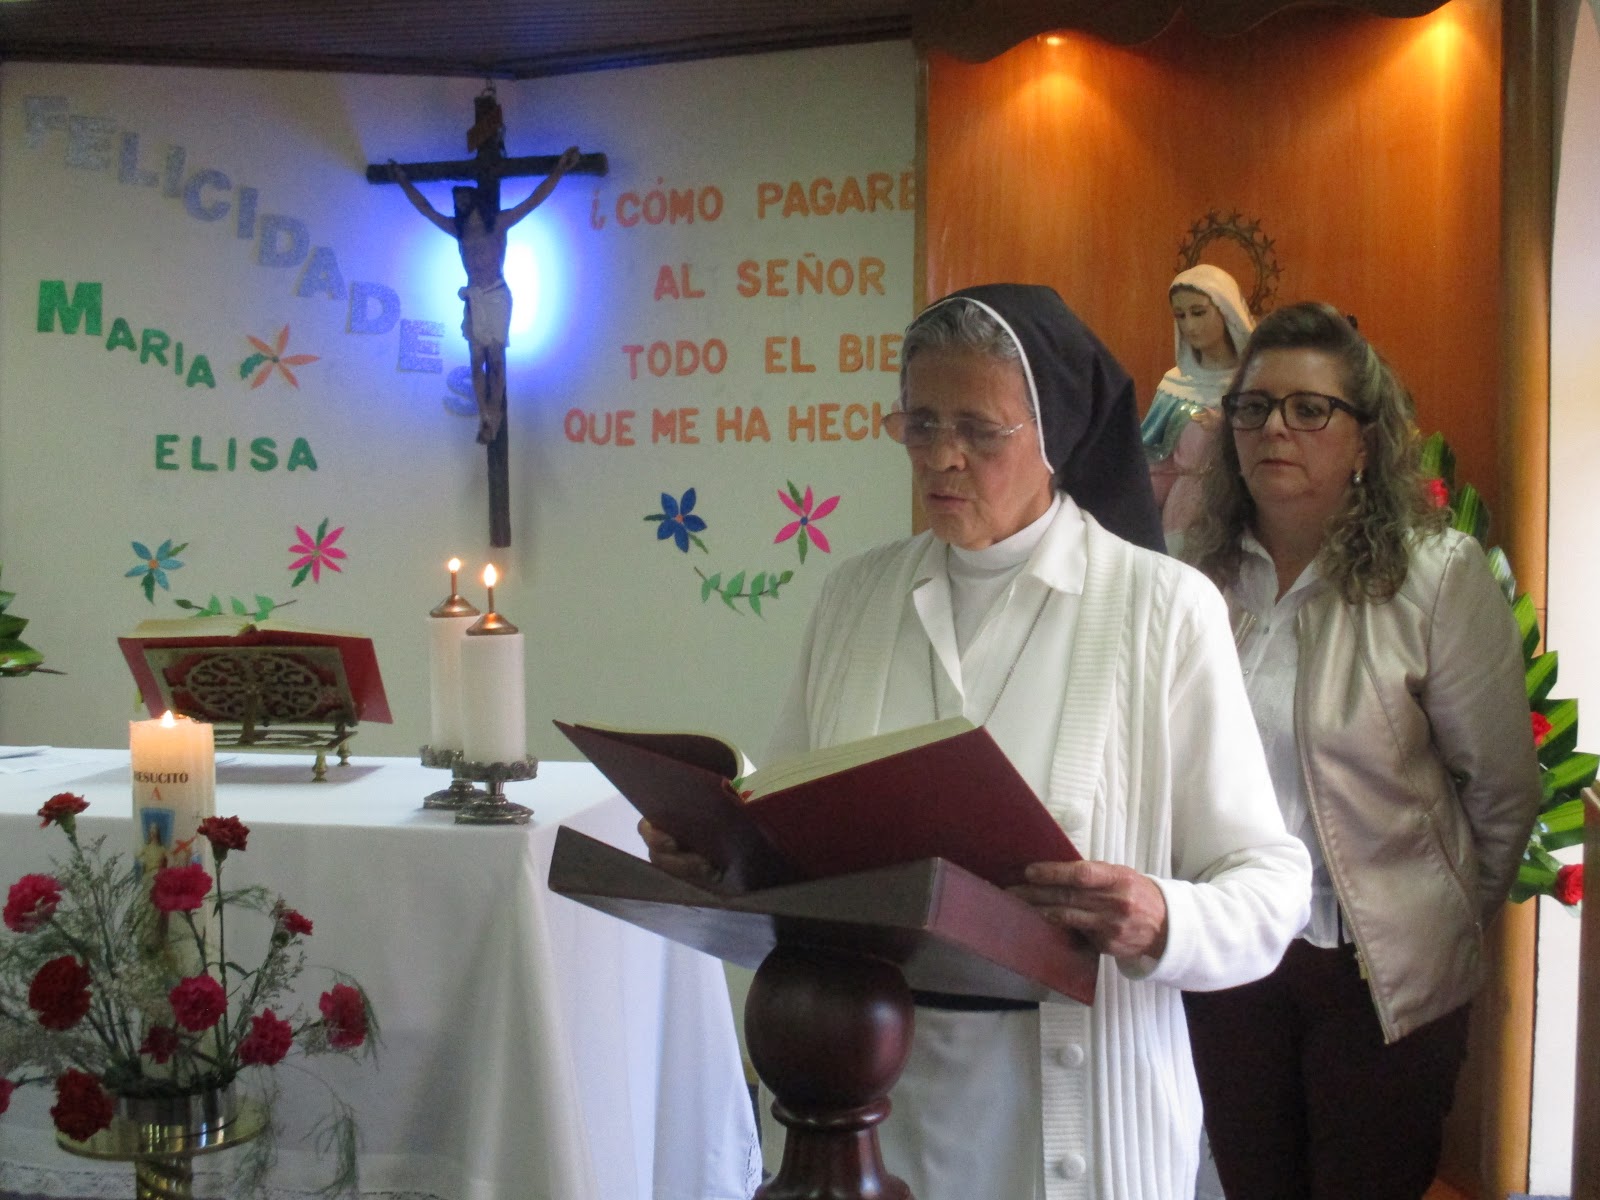 CELEBRACIÓN DE LOS 50 AÑOS DE VIDA RELIGIOSA DE MARÍA